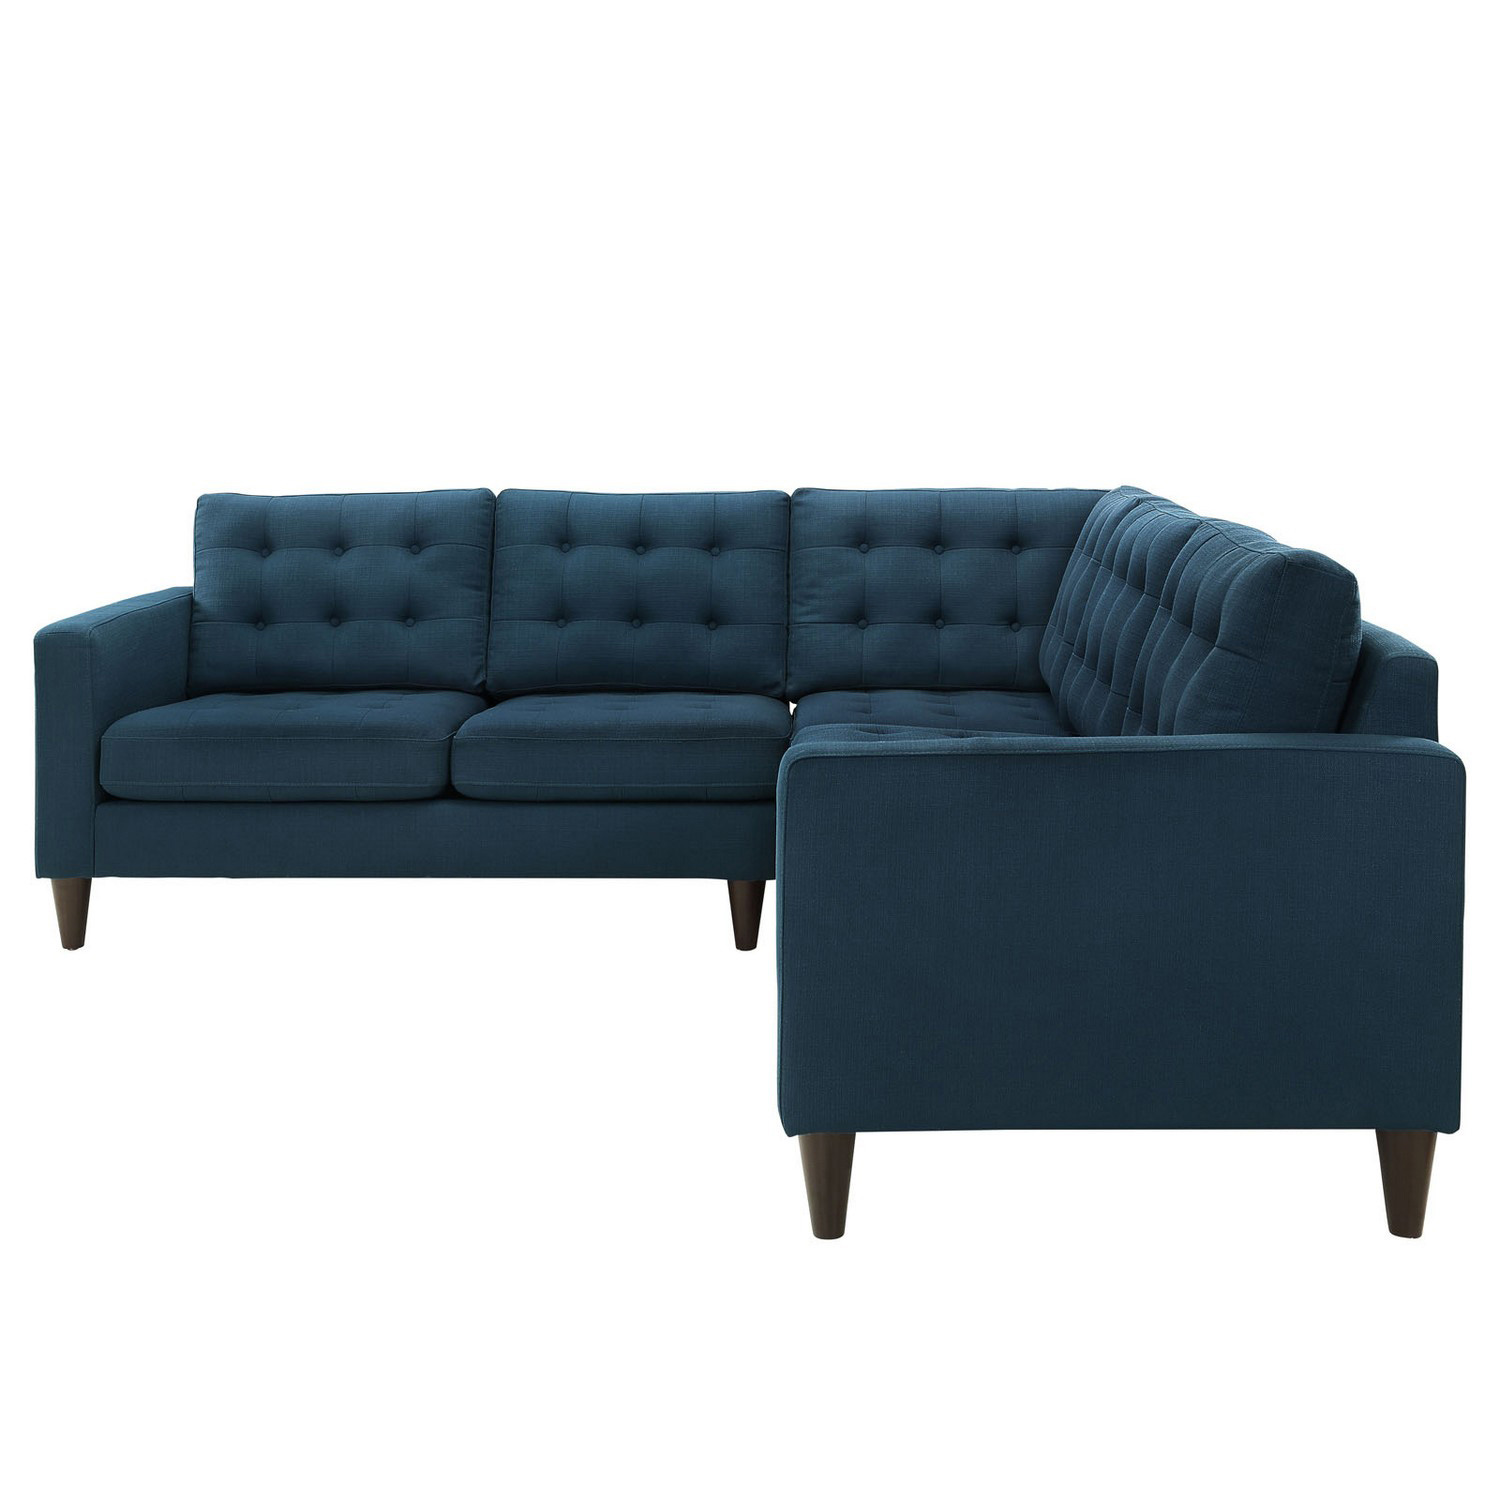 Modway Empress 3 Piece Fabric Sectional Sofa Set - Azure